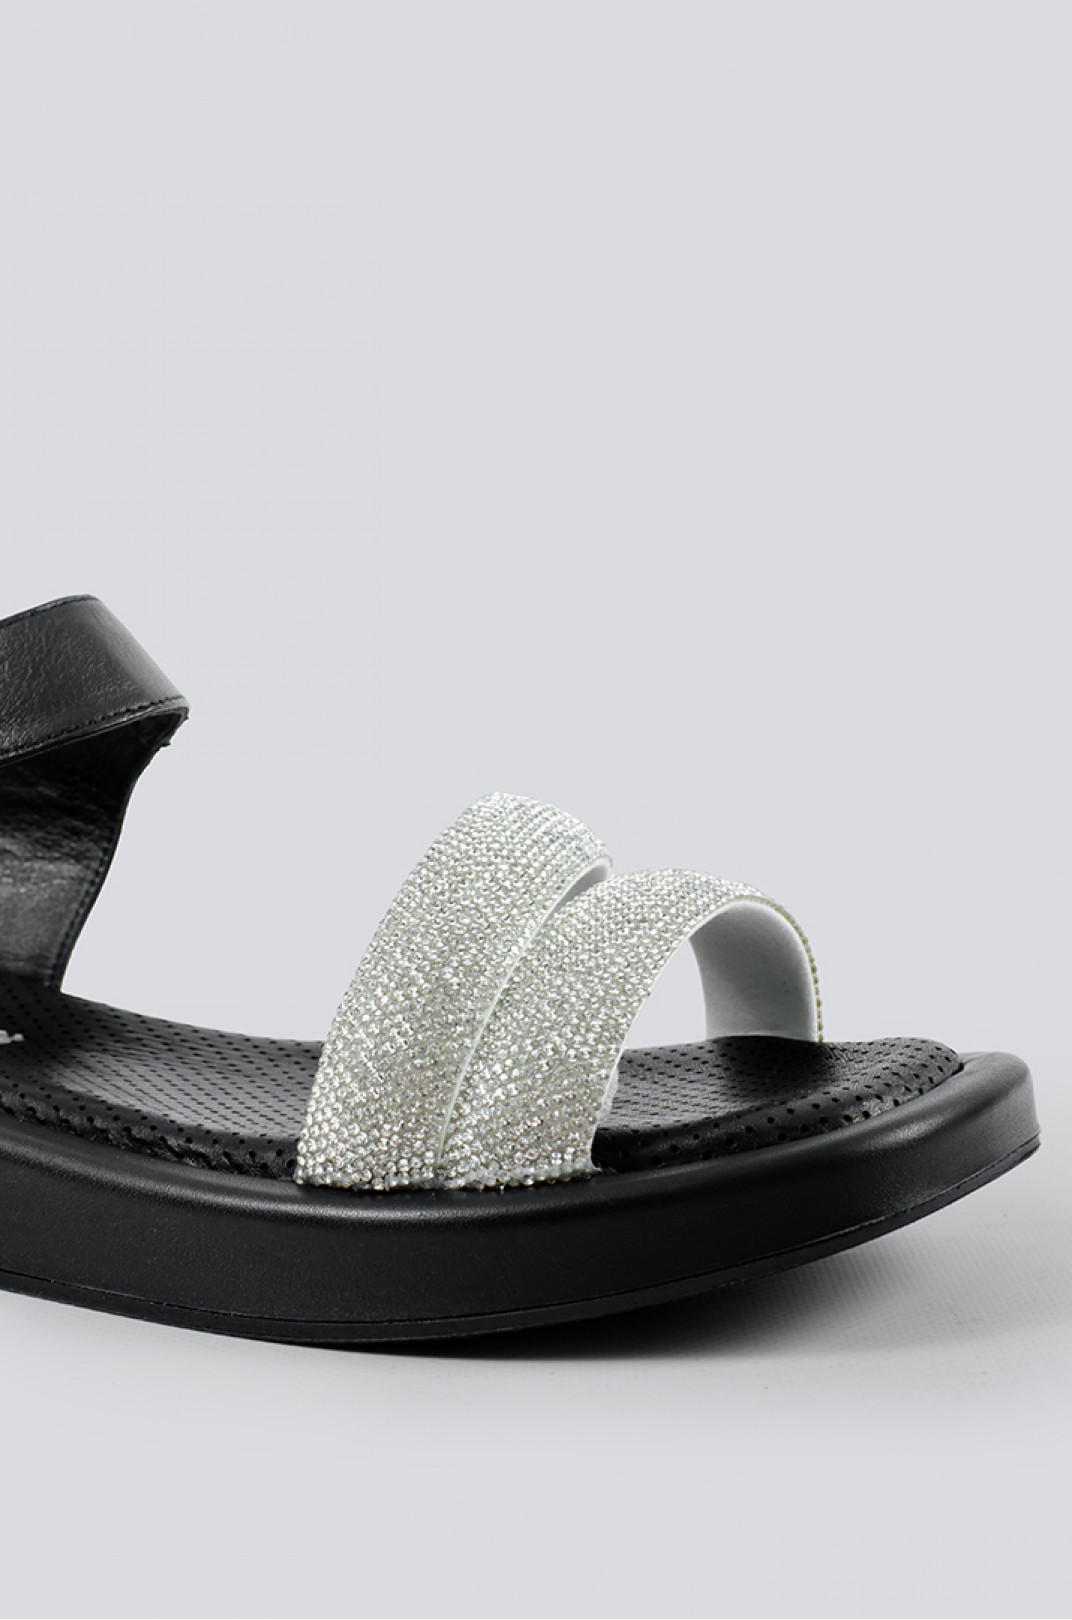 Ніжні чорно-сріблясті сандалі великих розмірів